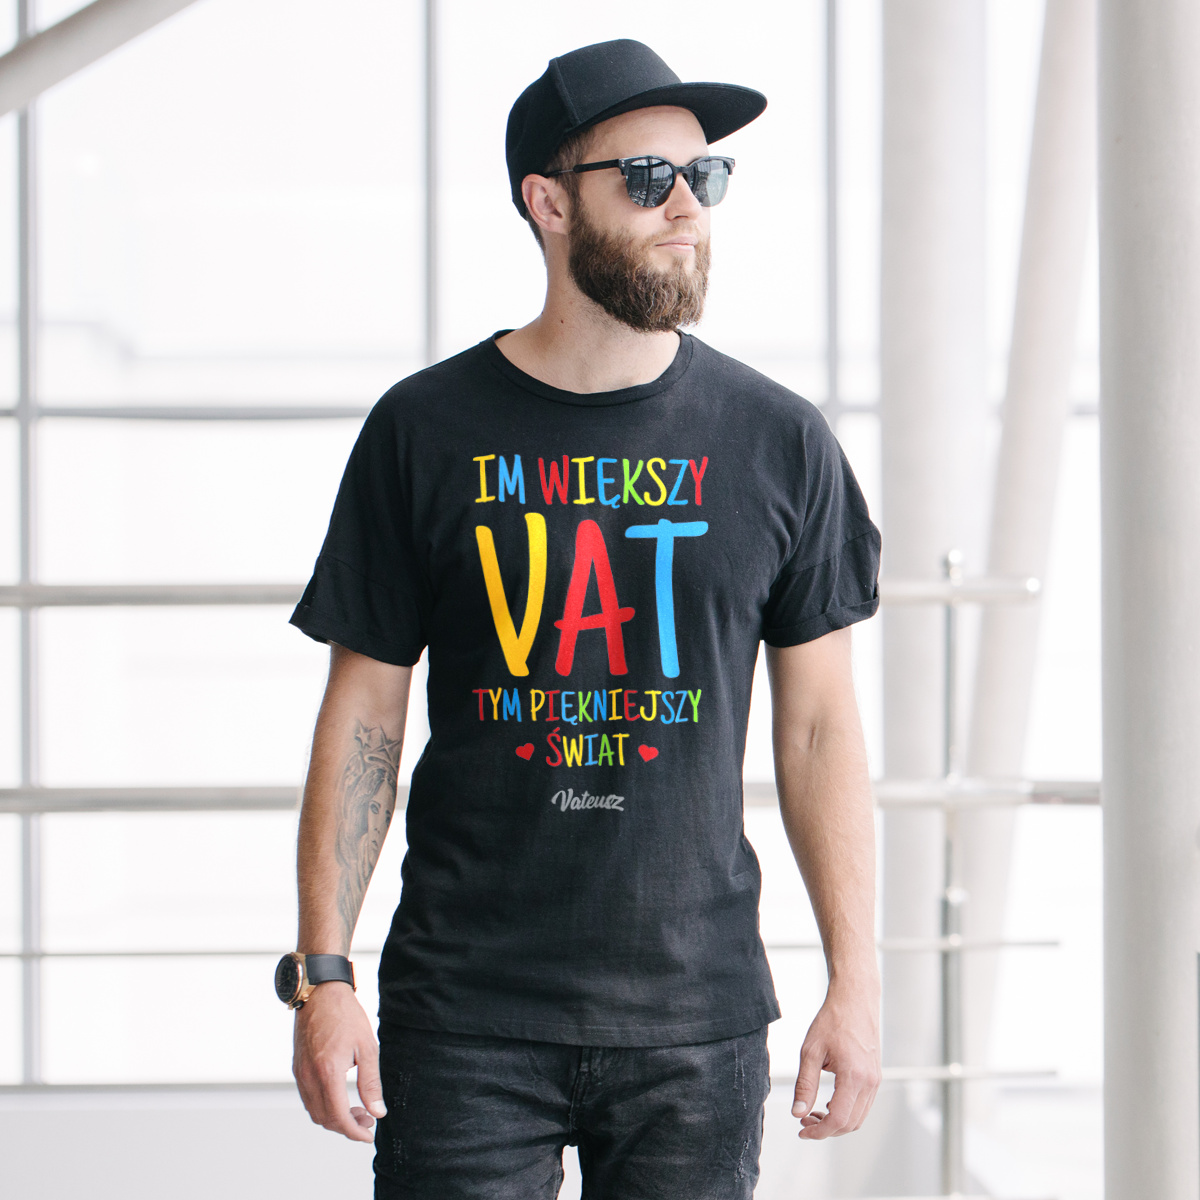 Im większy VAT tym piękniejszy świat - Męska Koszulka Czarna